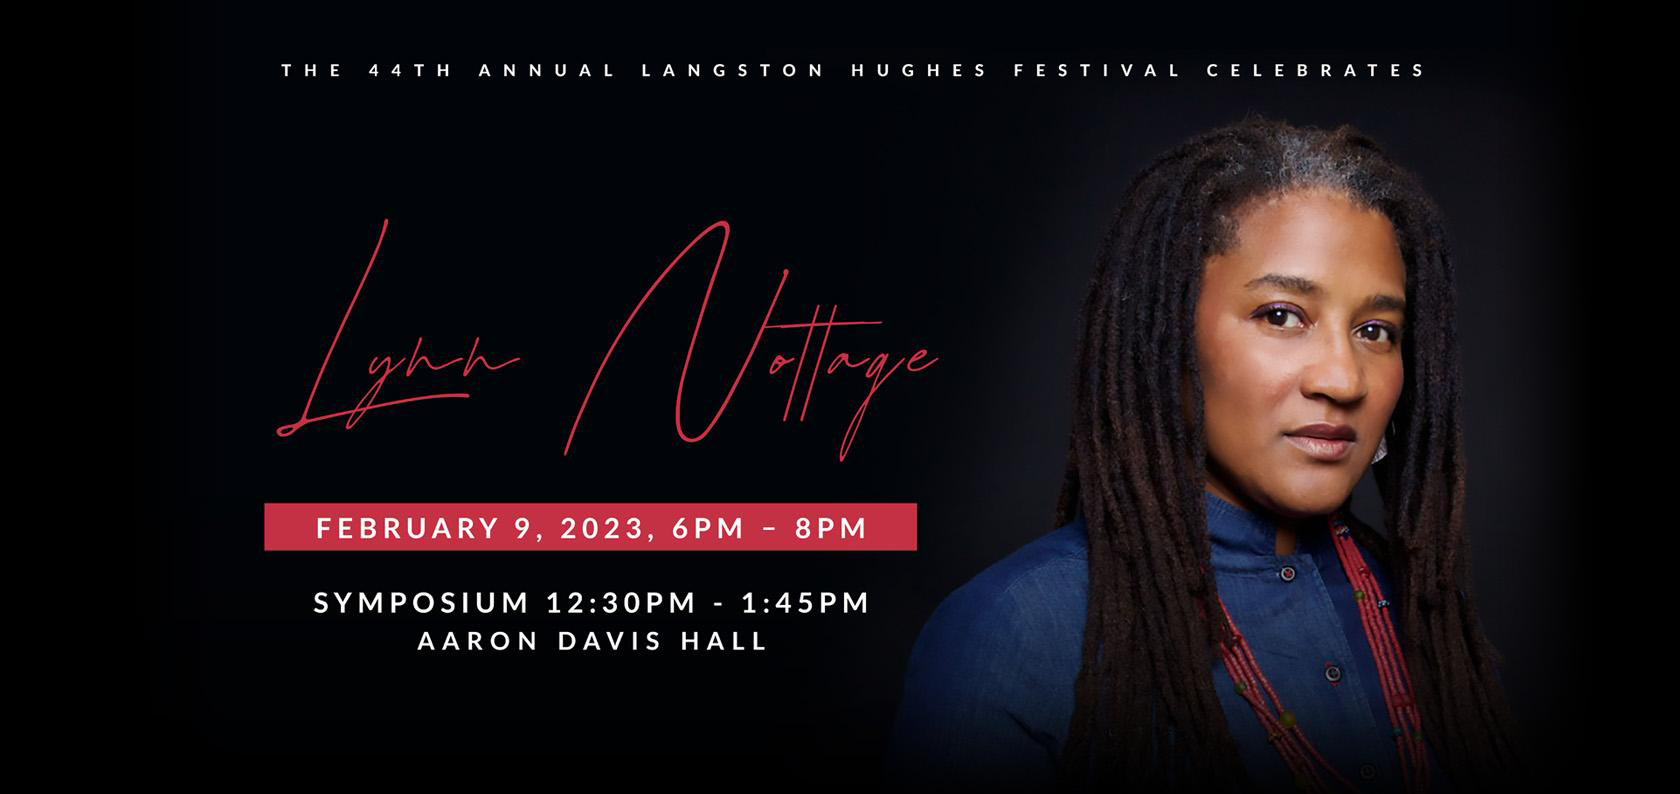 Langston Hughes Festival 2023 honors Lynn Nottage